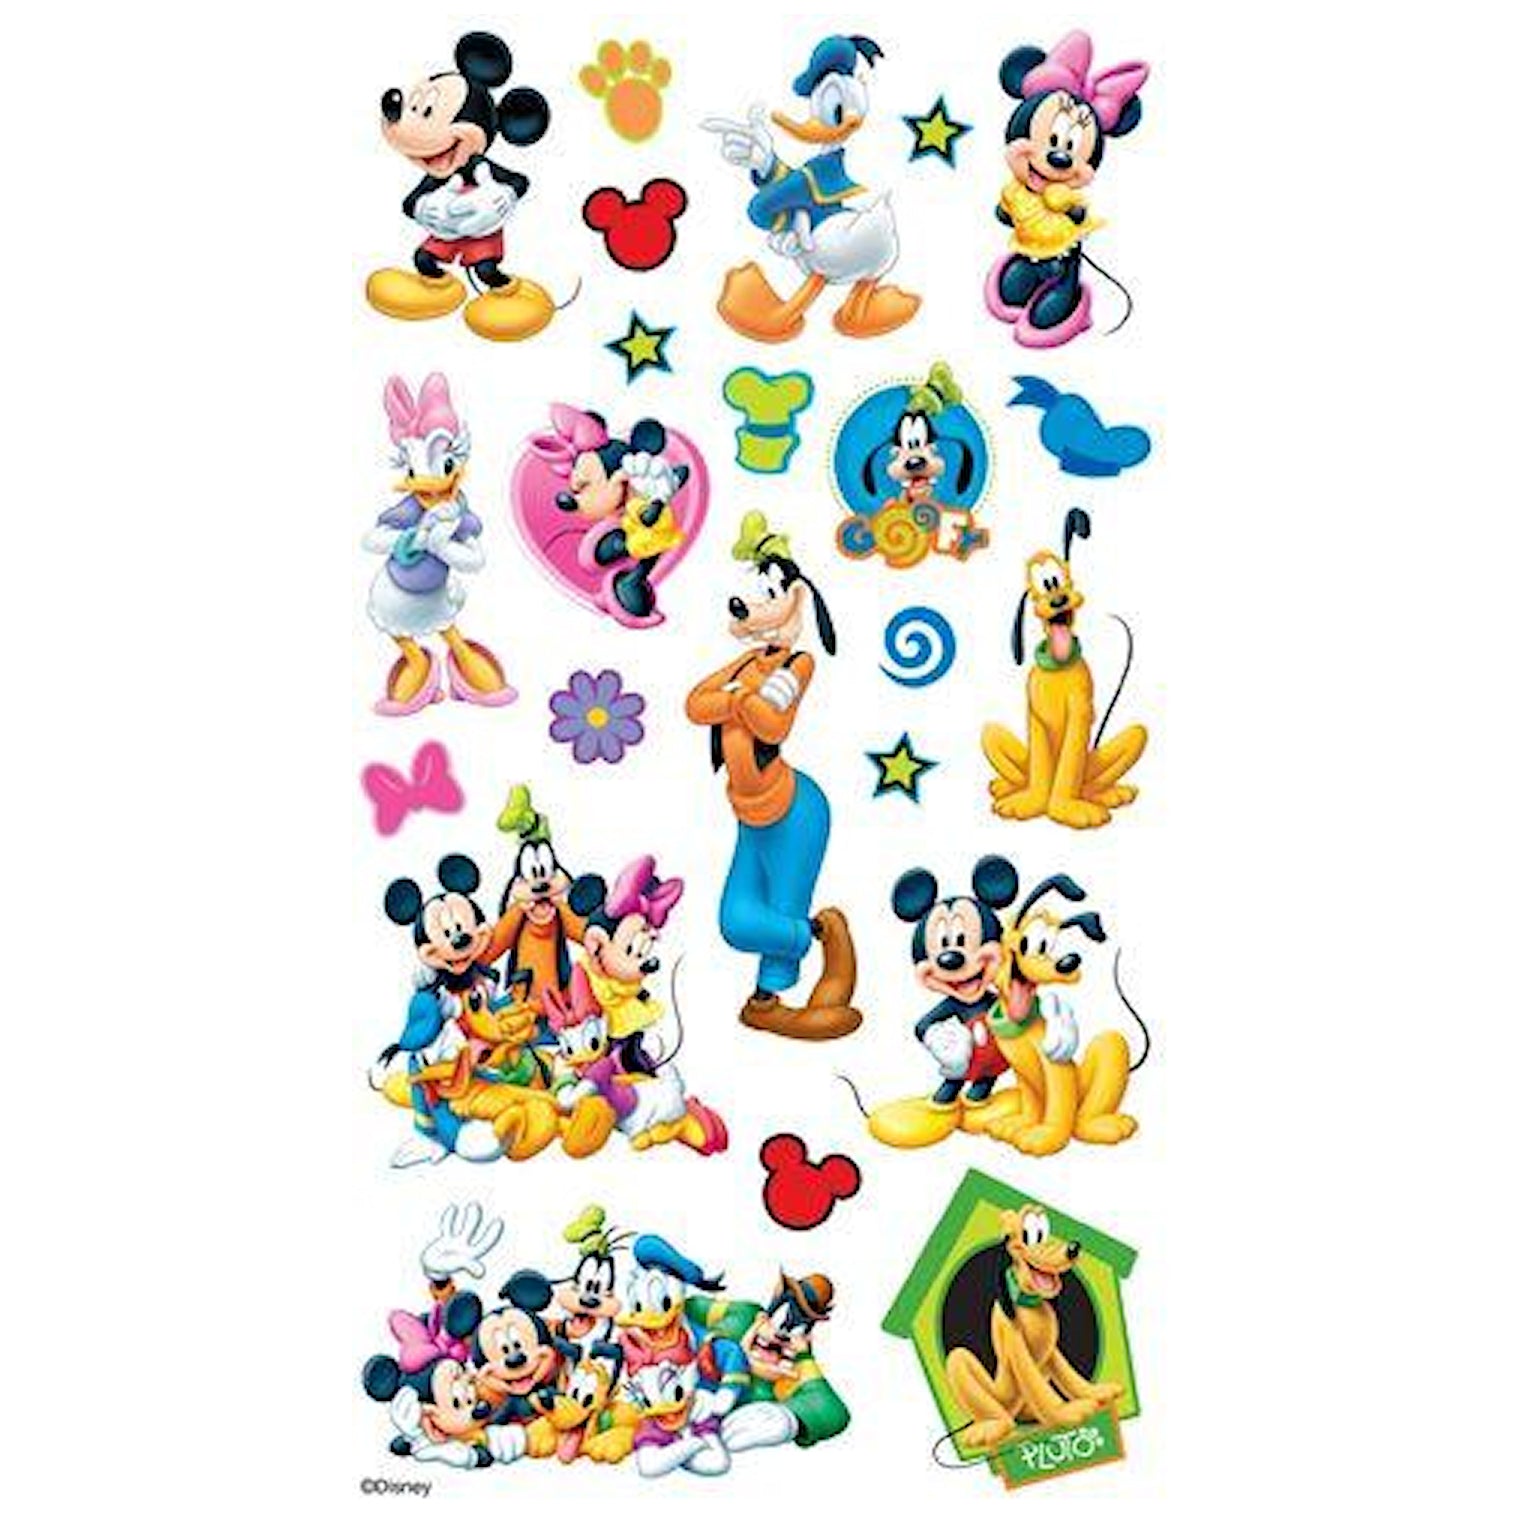 Mickey and Friends Stickers / Estampas de Mickey Mouse y sus